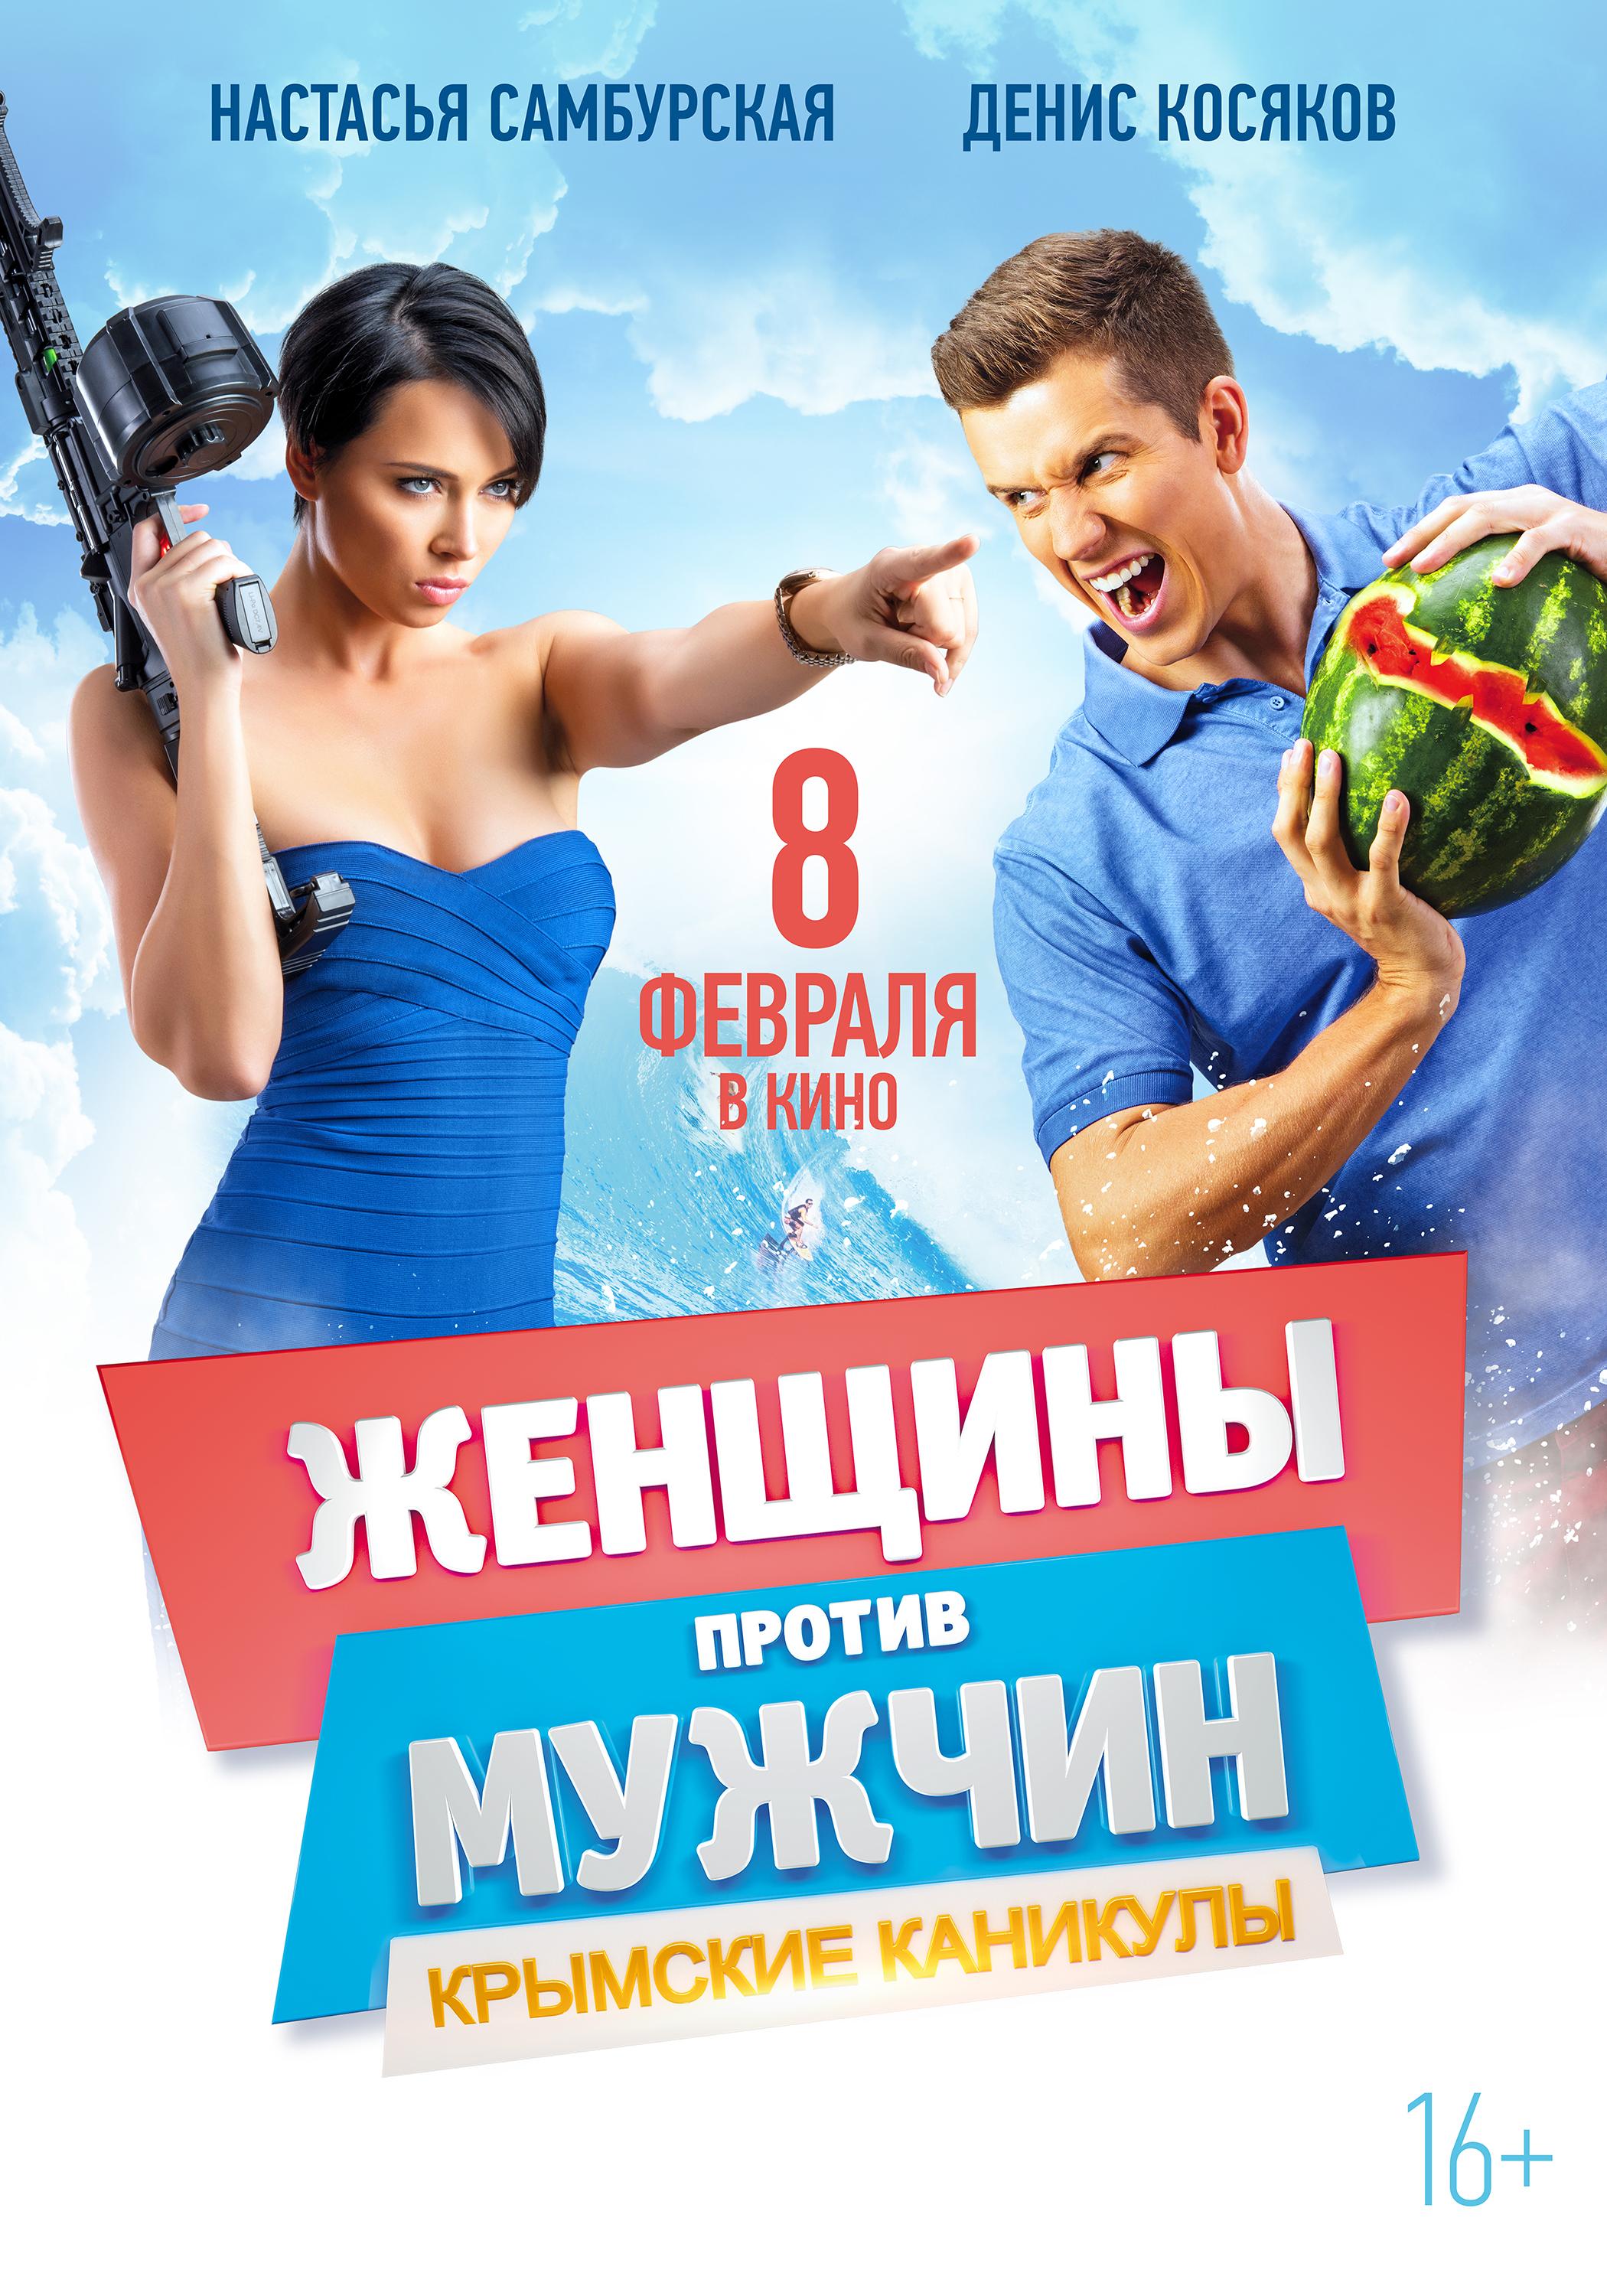 Постер - Женщины против мужчин: Крымские каникулы: 2100x3000 / 600.42 Кб